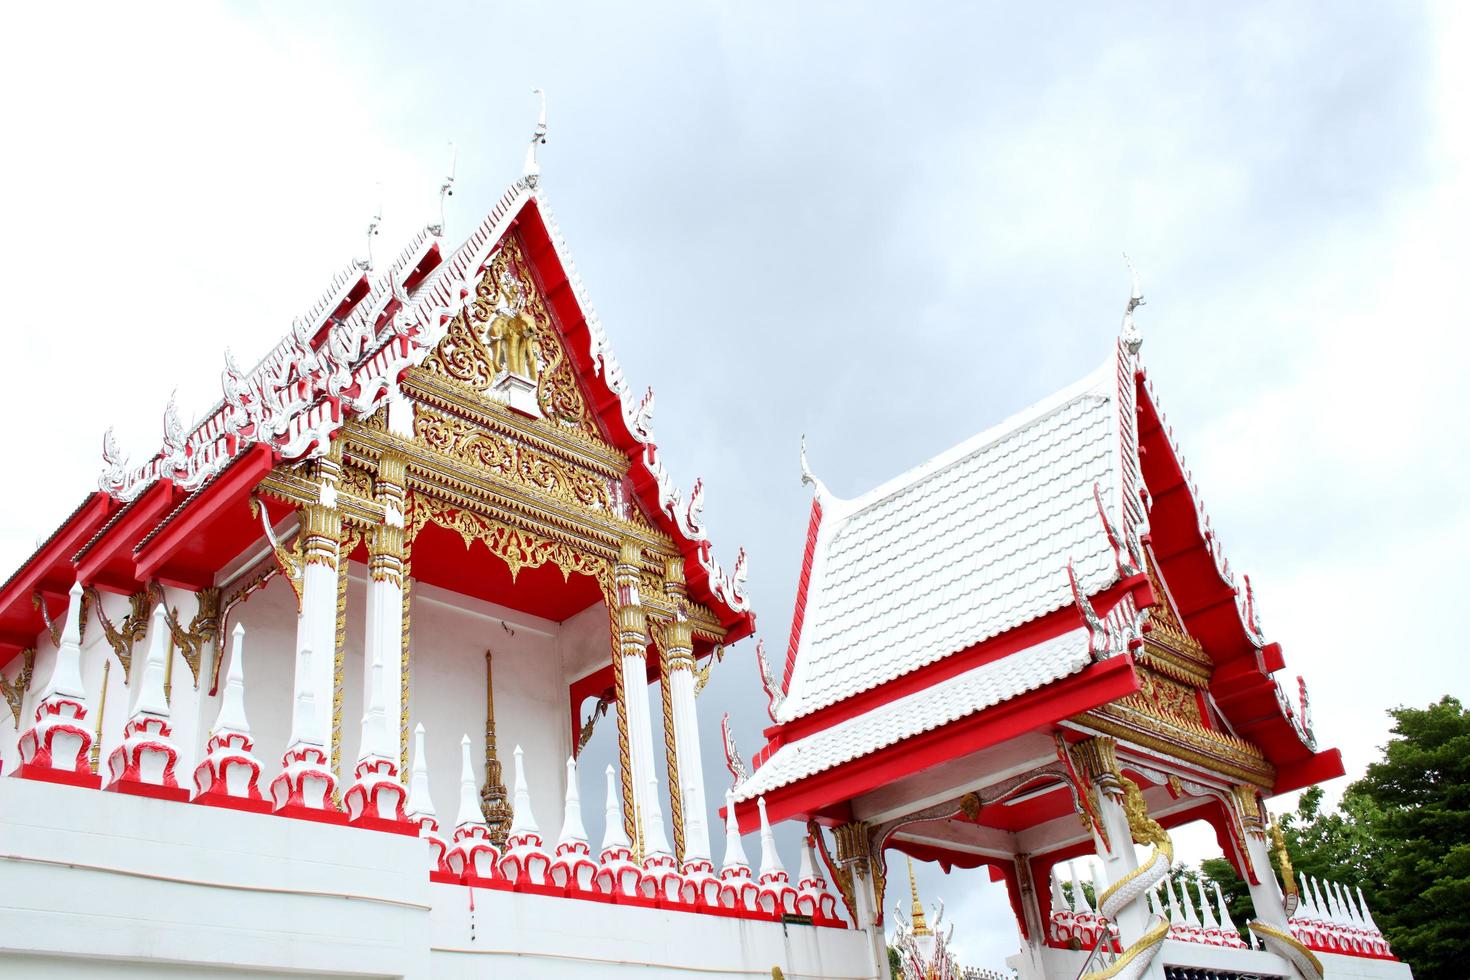 frente da igreja de colr vermelho e branco em estilo antigo tailandês de watkhunyingsomjean e fundo de céu nublado, thailnad foto